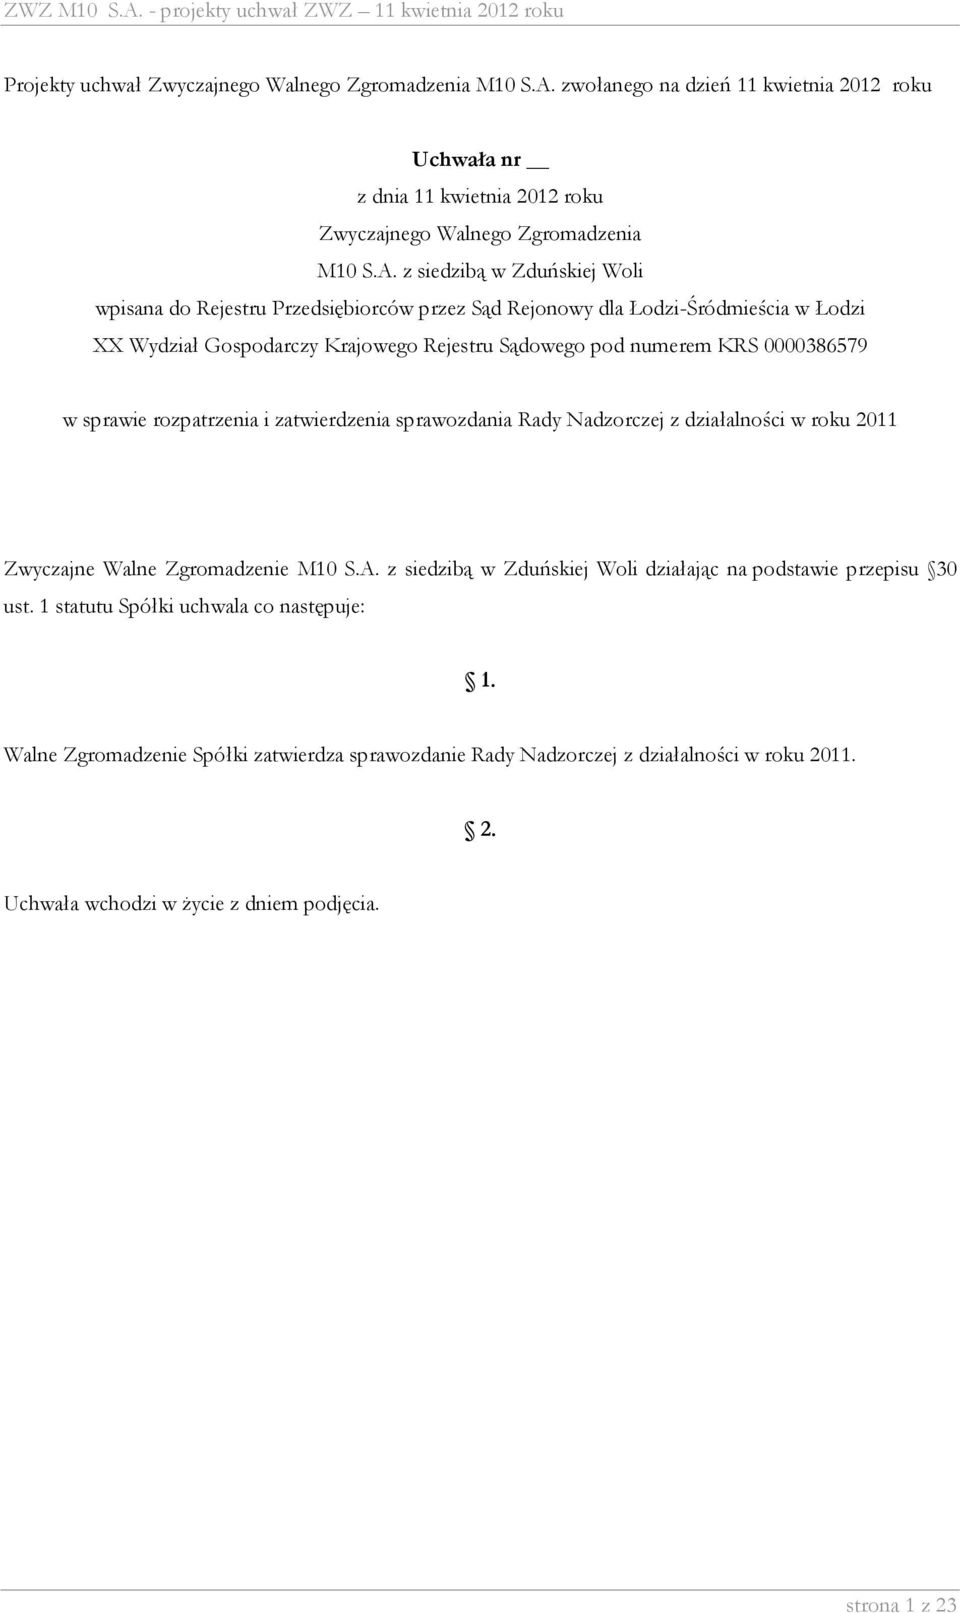 zatwierdzenia sprawozdania Rady Nadzorczej z działalności w roku 2011 Zwyczajne Walne Zgromadzenie